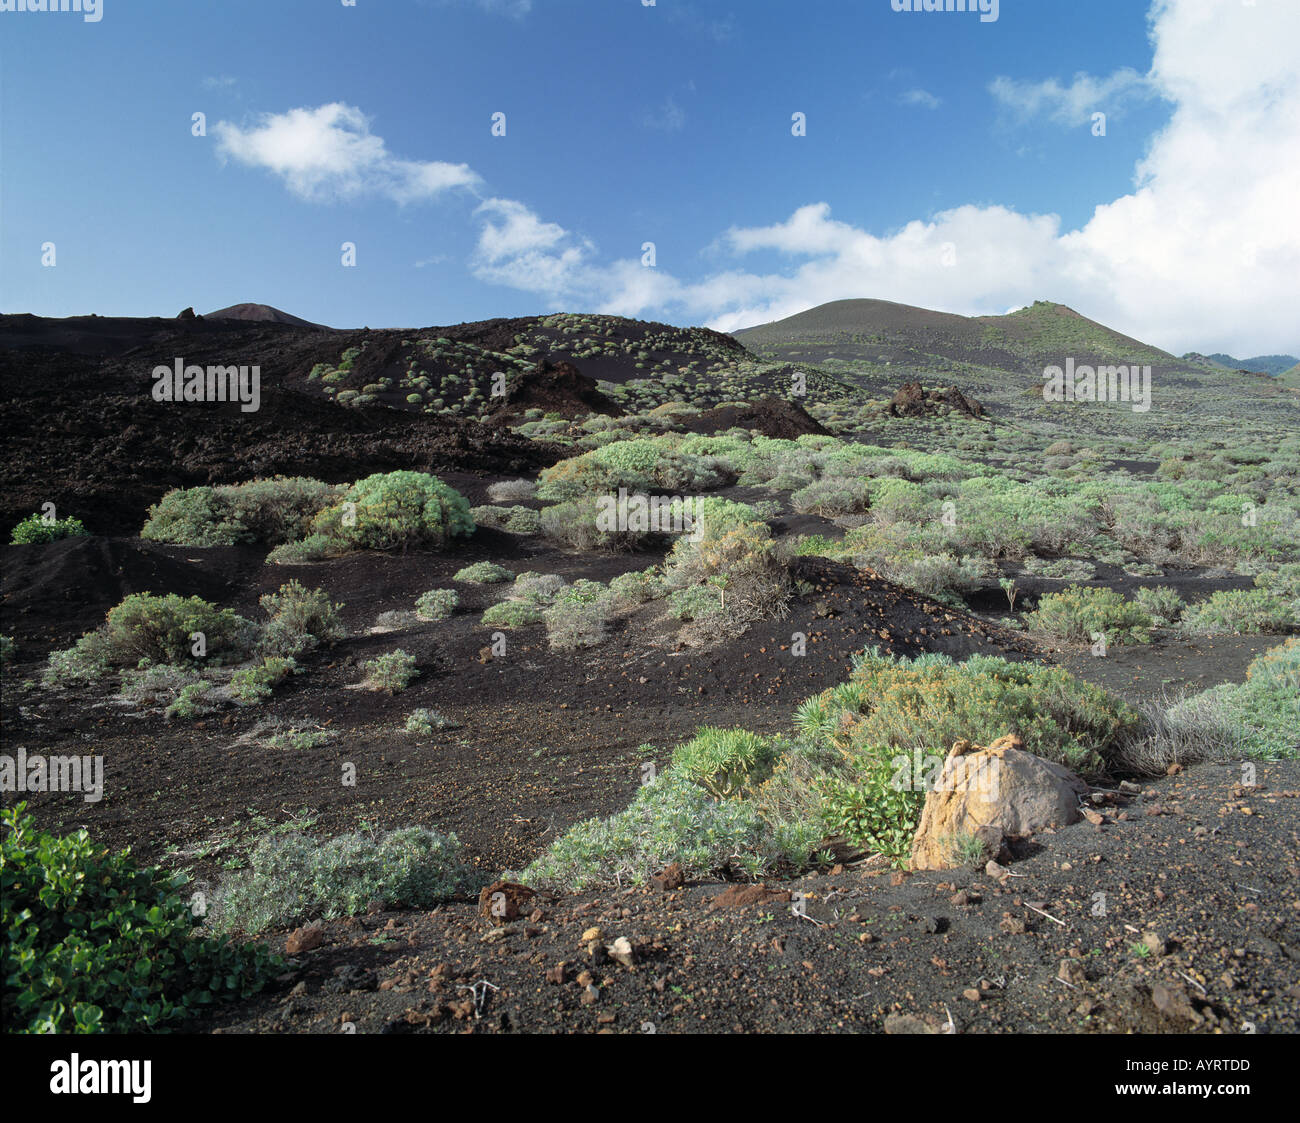 Vulkan Teneguia, Vulkanlandschaft, Gewaechse auf Lavaasche, junge Frau spaziert durch Vulkanlandschaft, Fuencaliente, La Palma, KANARISCHE INSELN Foto de stock